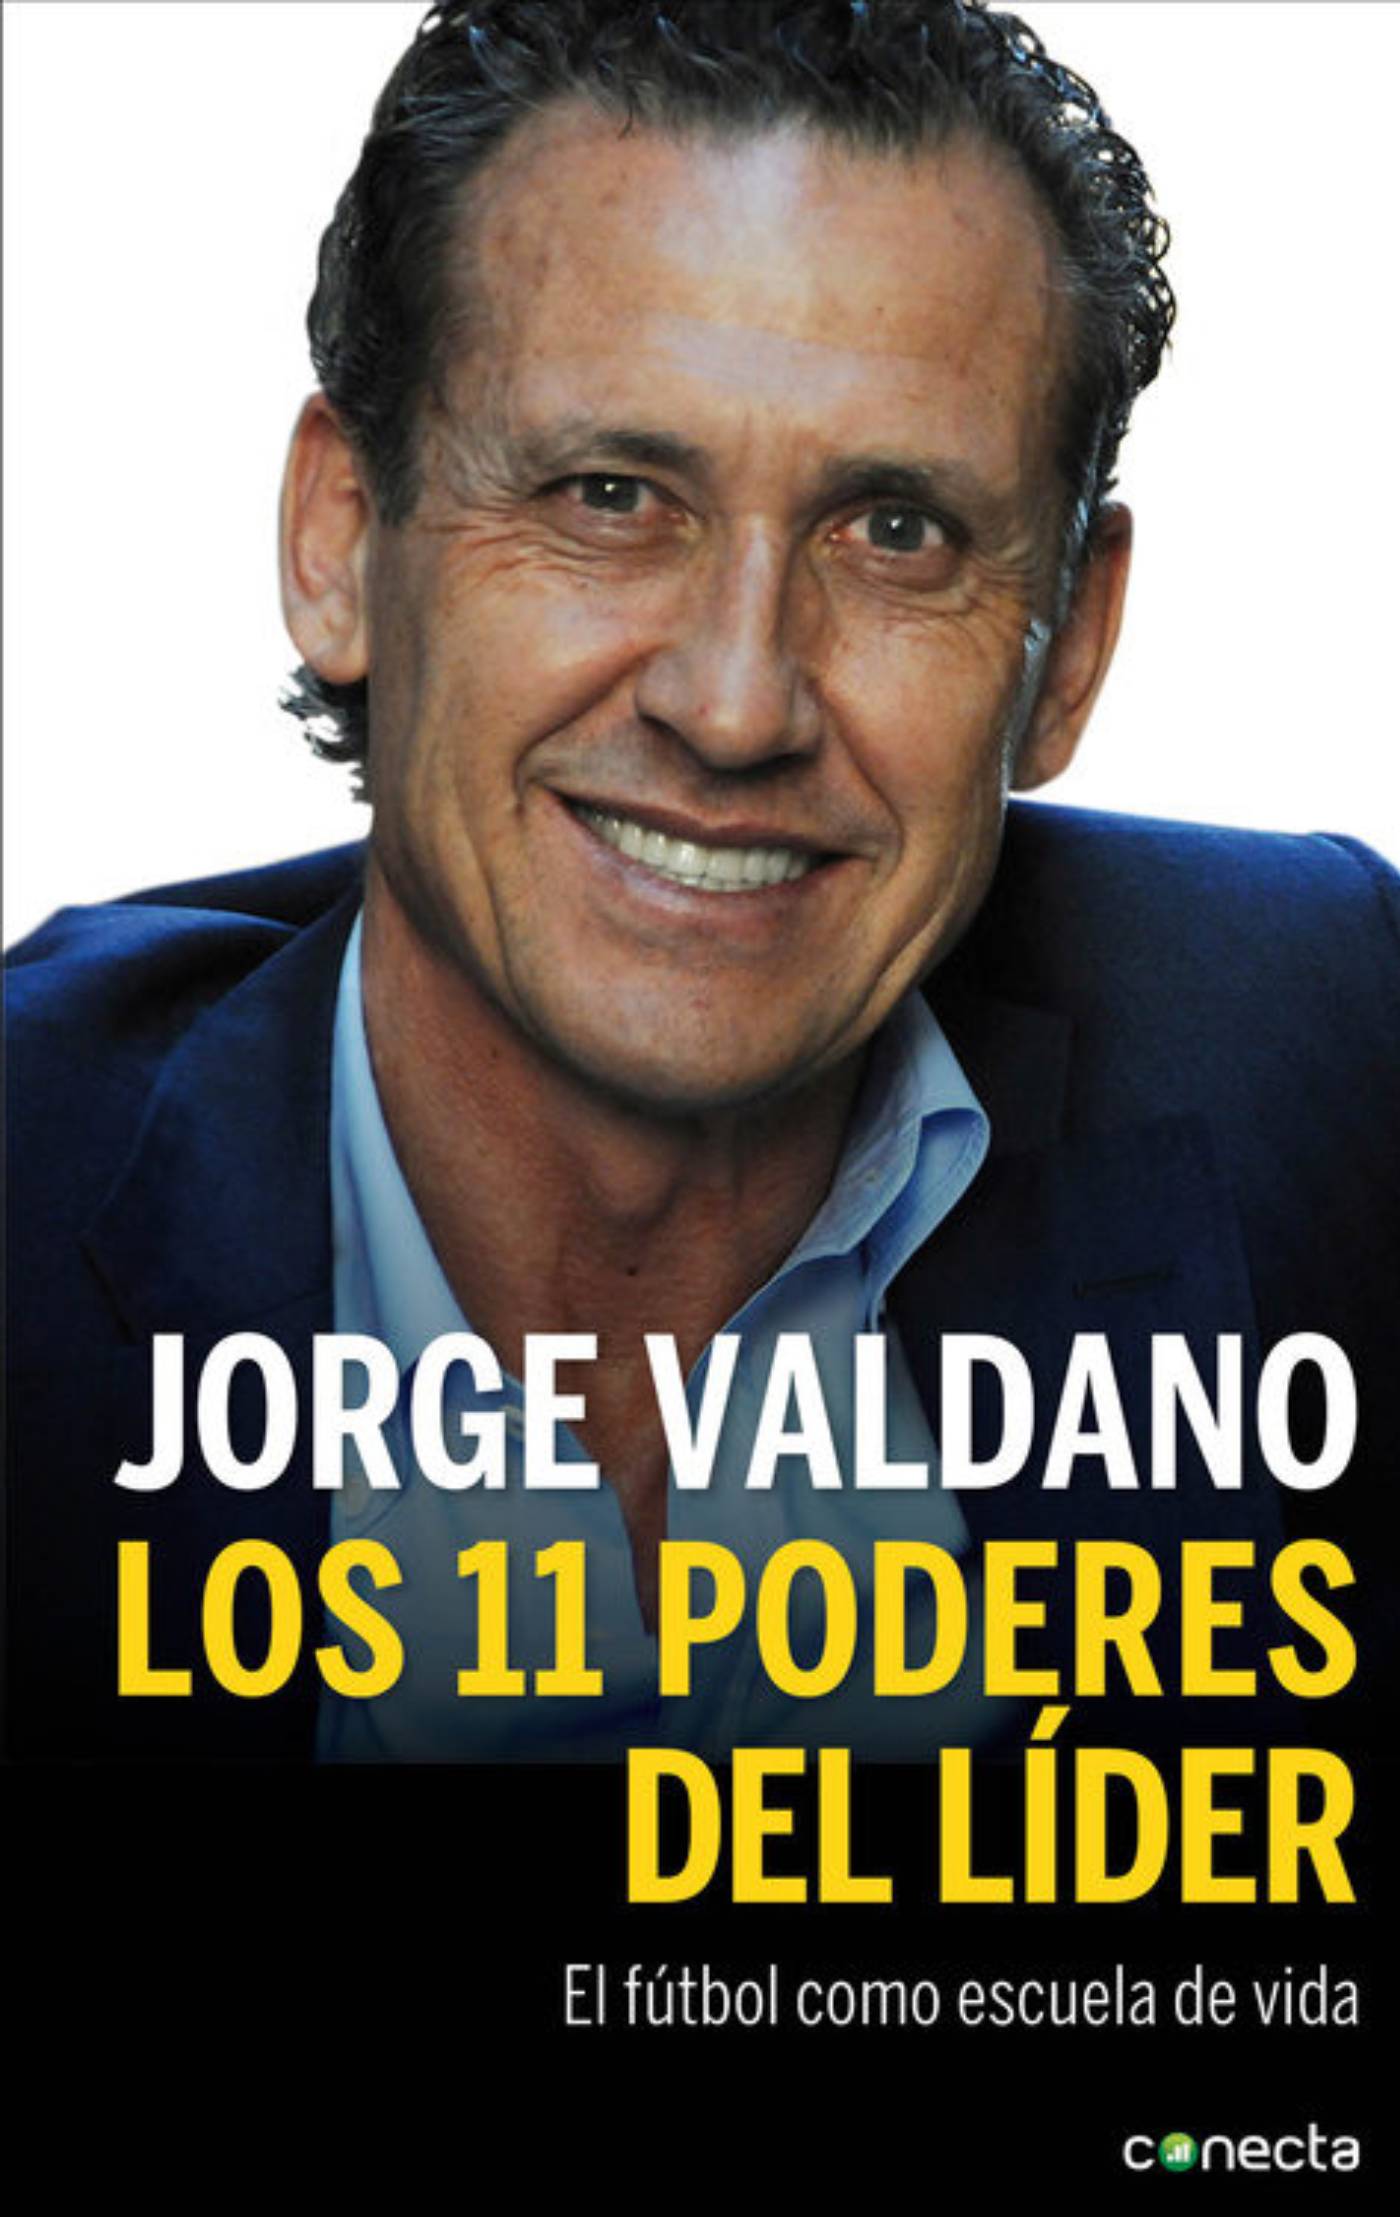 Los 11 poderes del lider Jorge Valdano